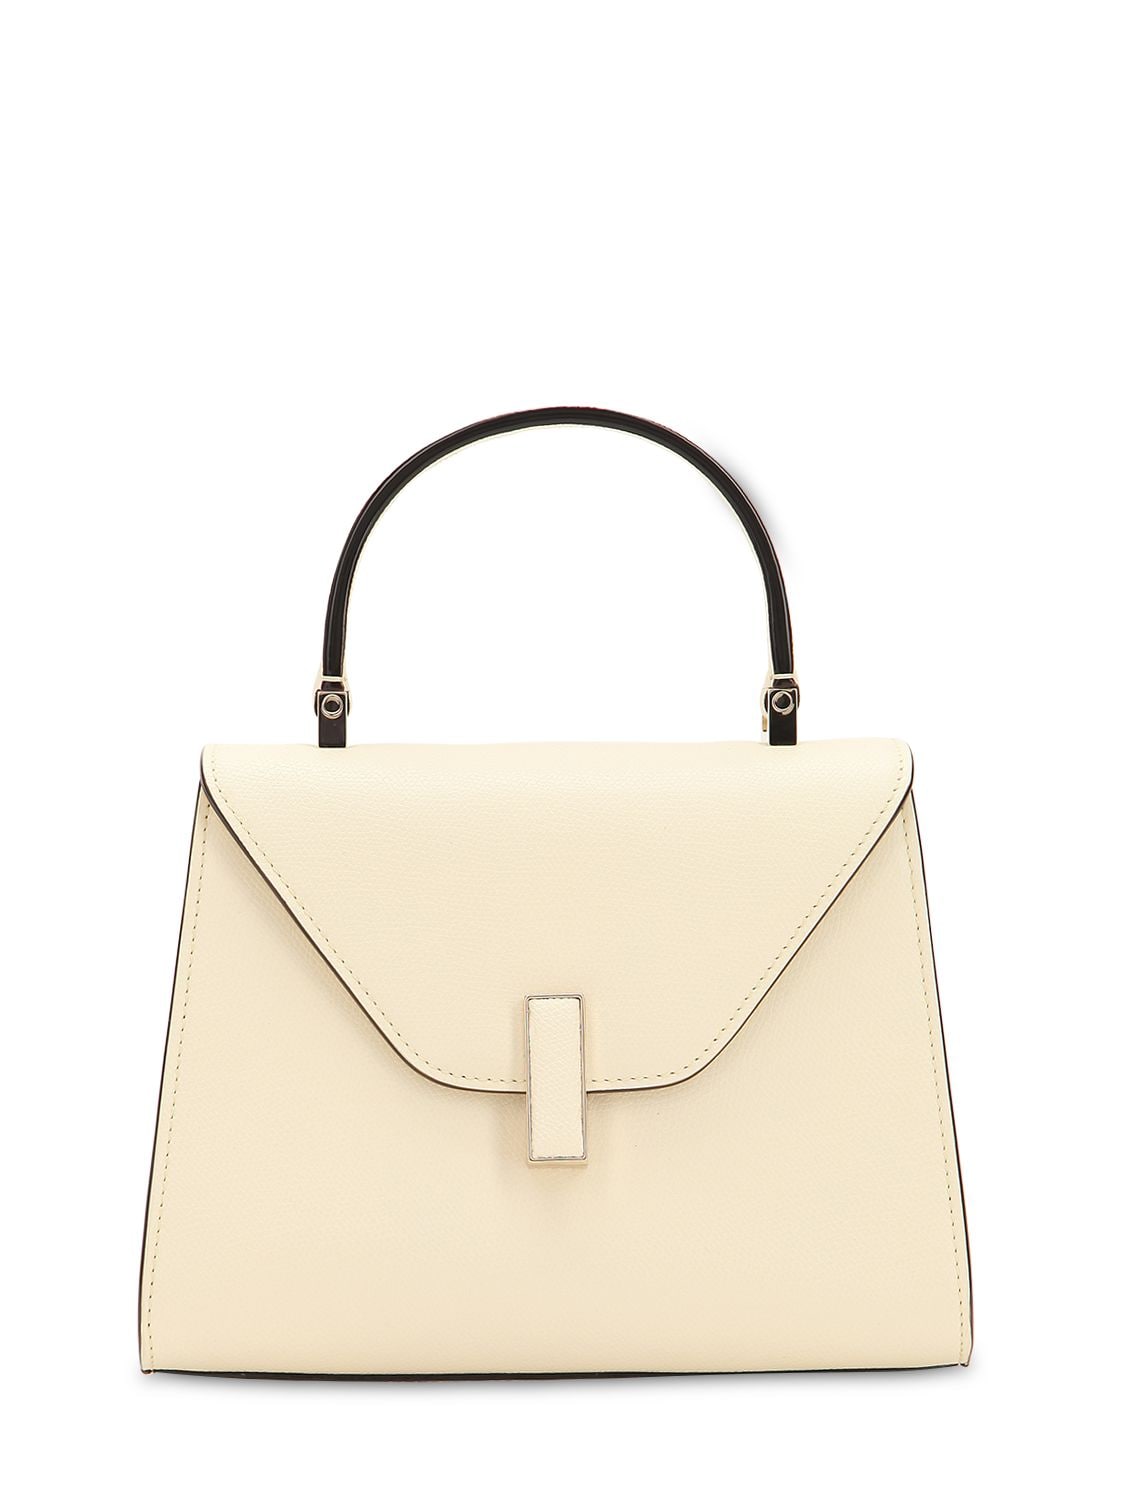 Valextra Iside Medium Leather Top-handle Bag In Pergamena | ModeSens